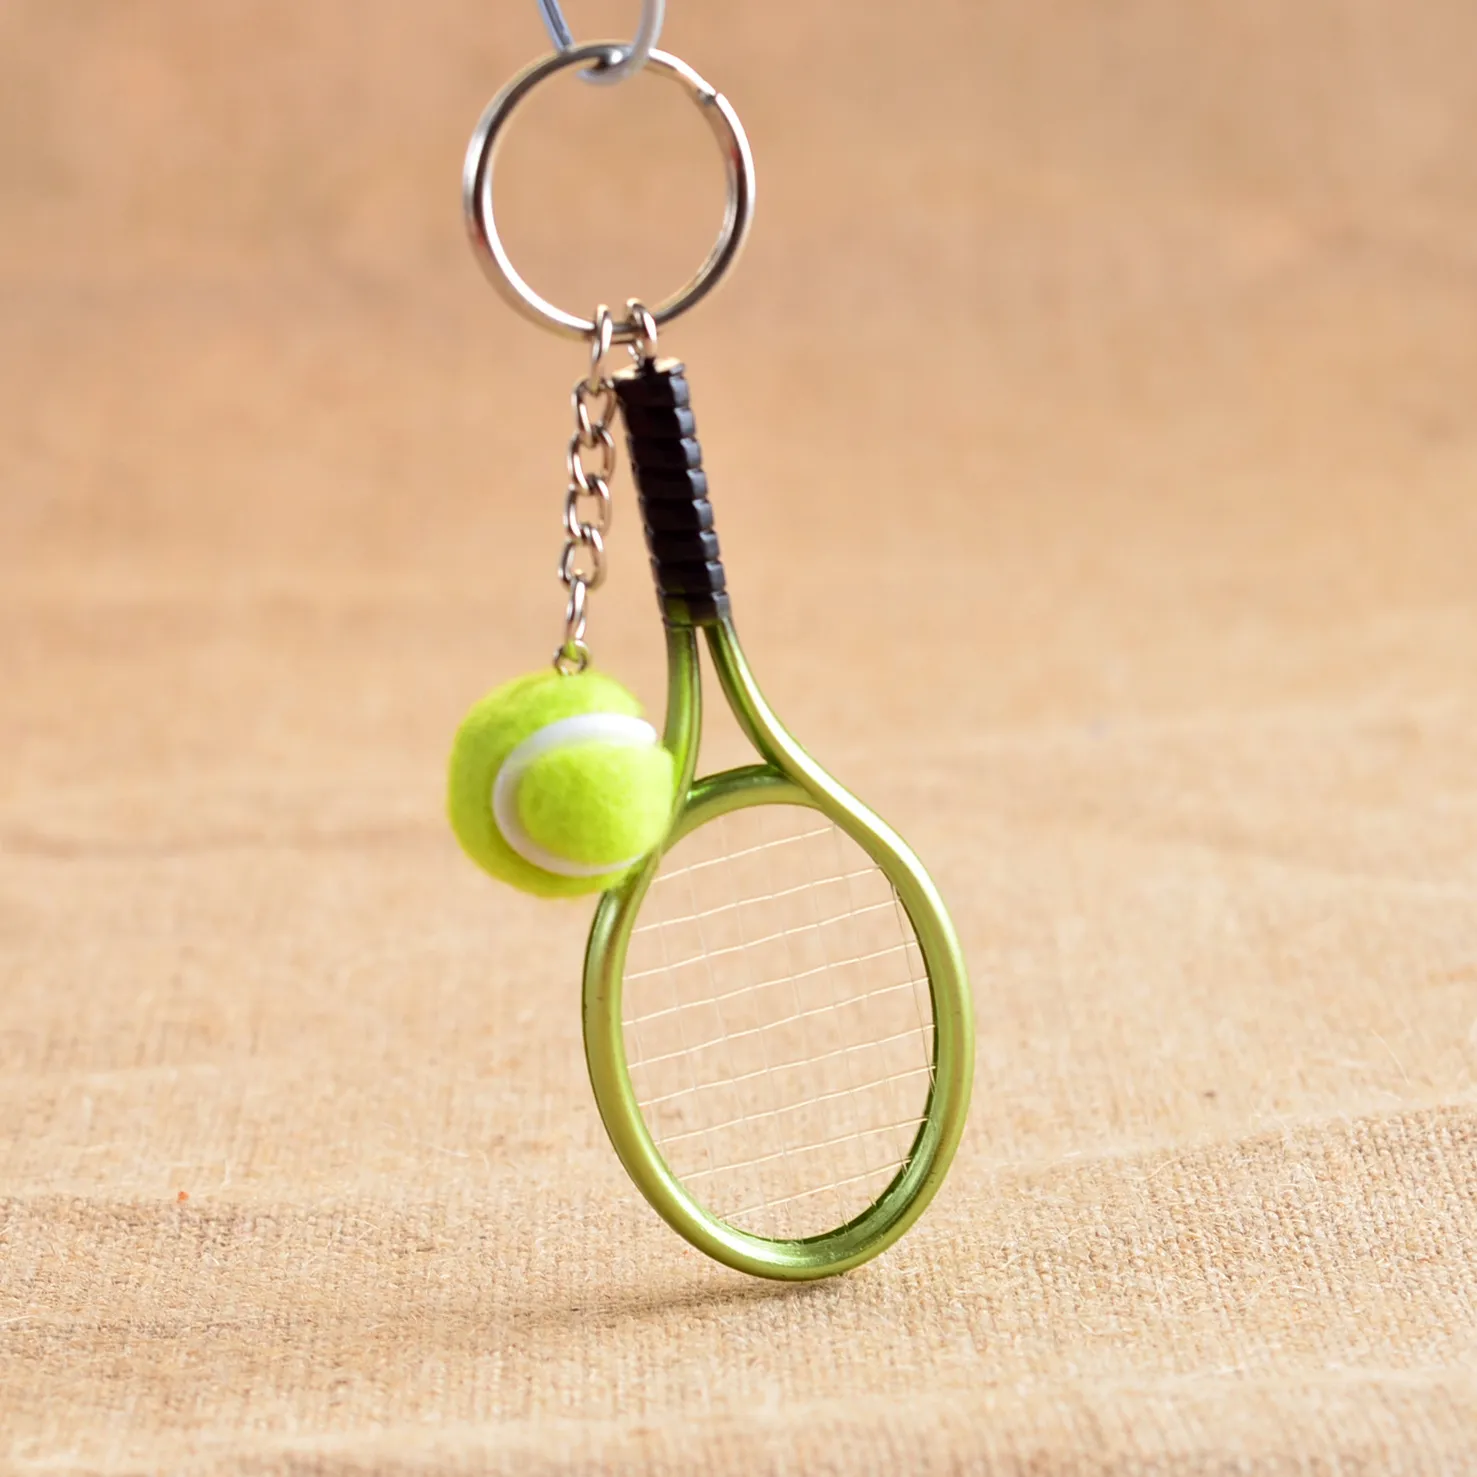 Nova chegada Mini raquete de tênis chaveiro personalidade criativa publicidade pequenos presentes R158 Artes e Ofícios misturar a ordem como suas necessidades